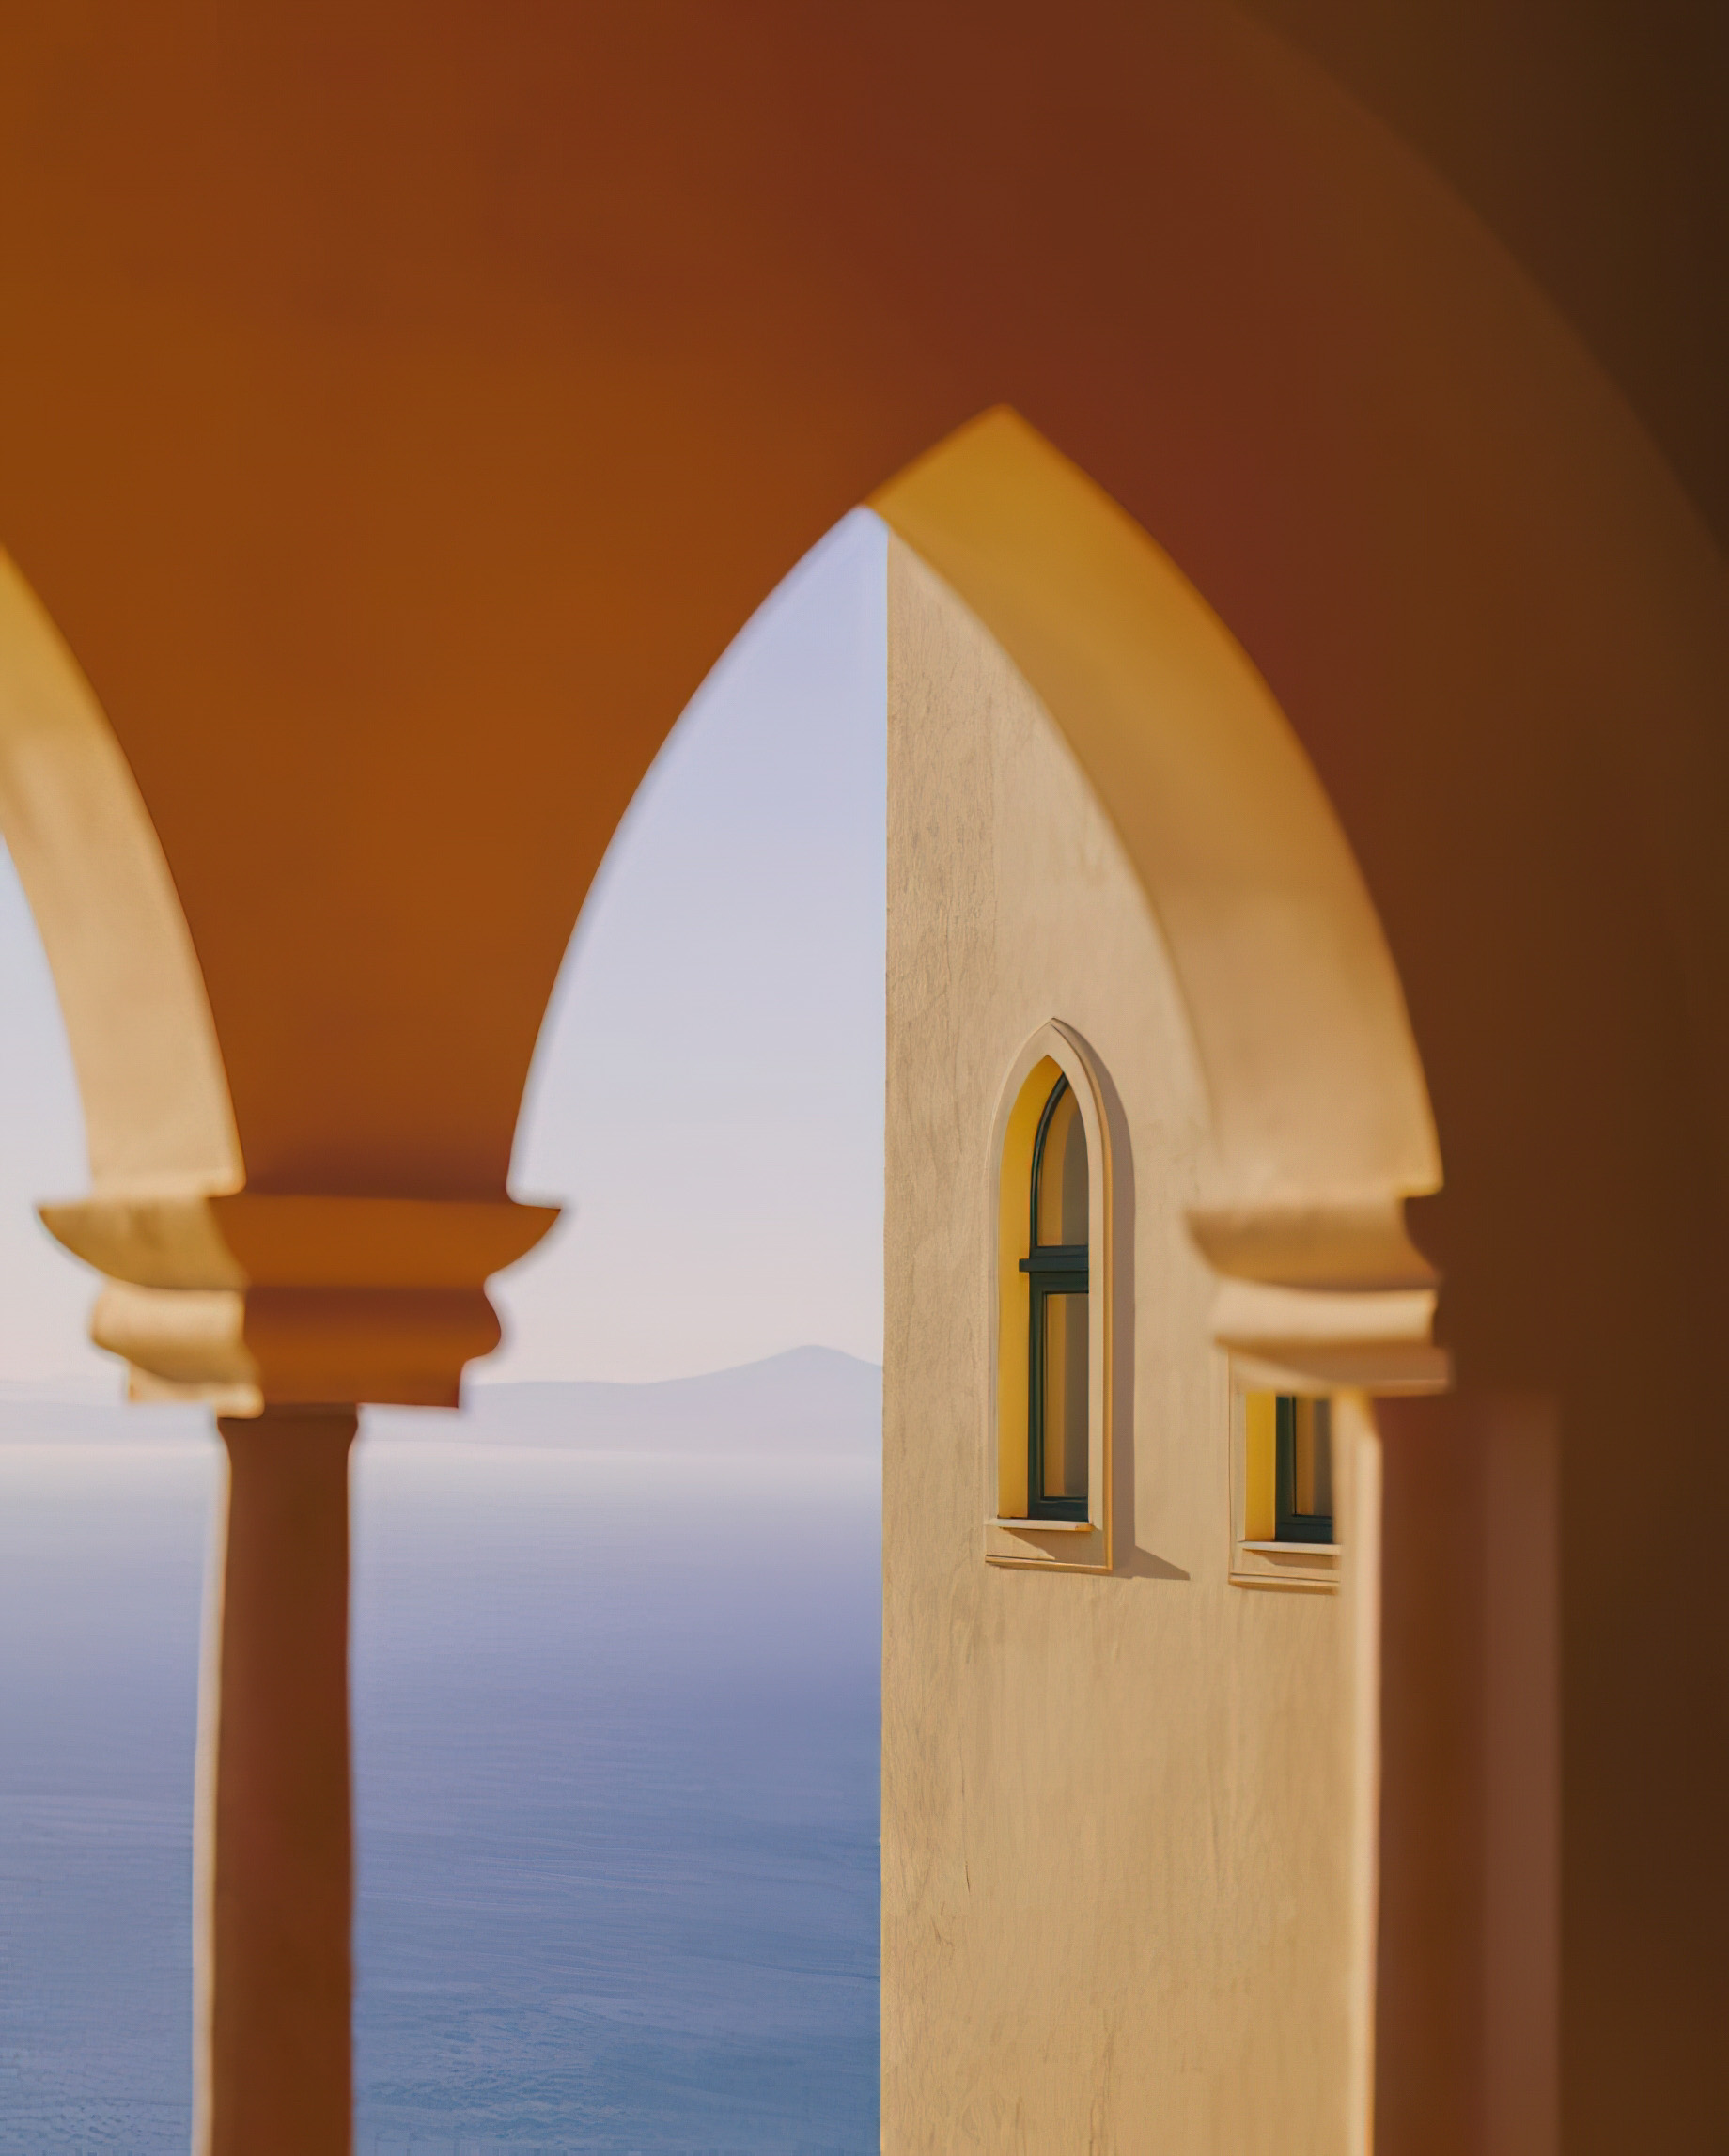 Caruso, A Belmond Hotel, Amalfi Coast – Ravello, Italy – Architecture